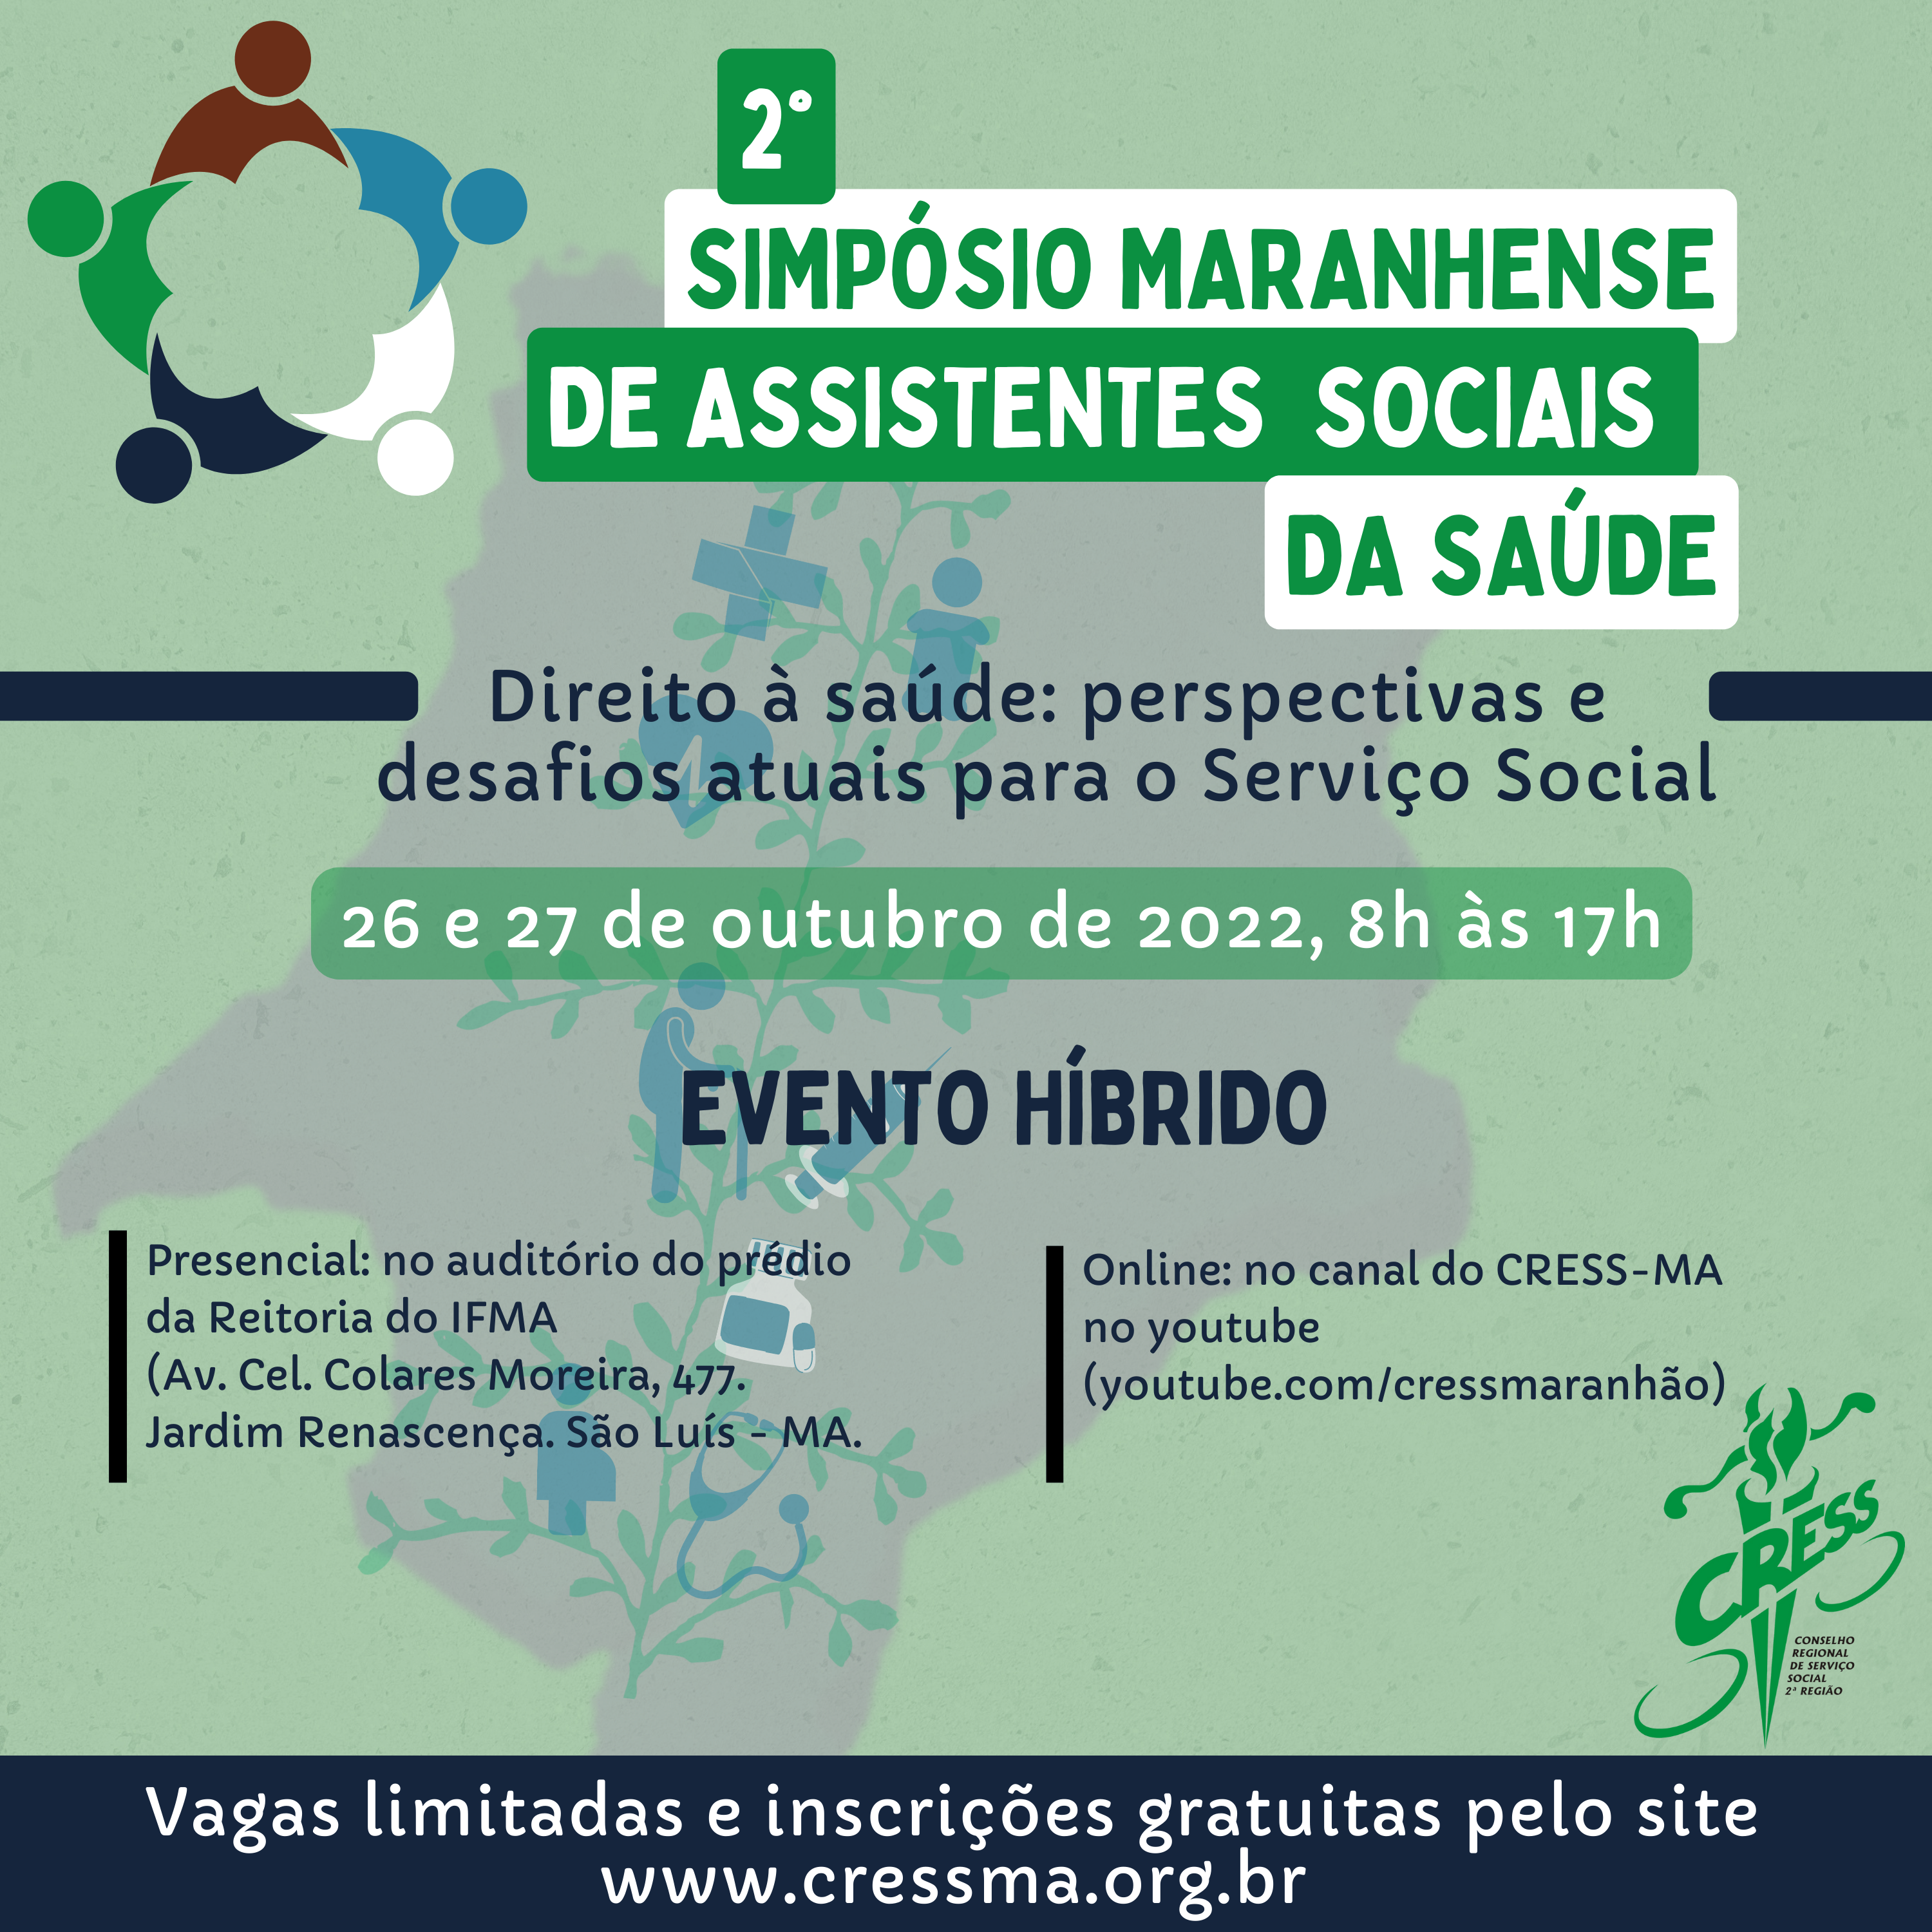 19 a 21/05- 4º Simpósio Mineiro de Assistentes Sociais - CRESS